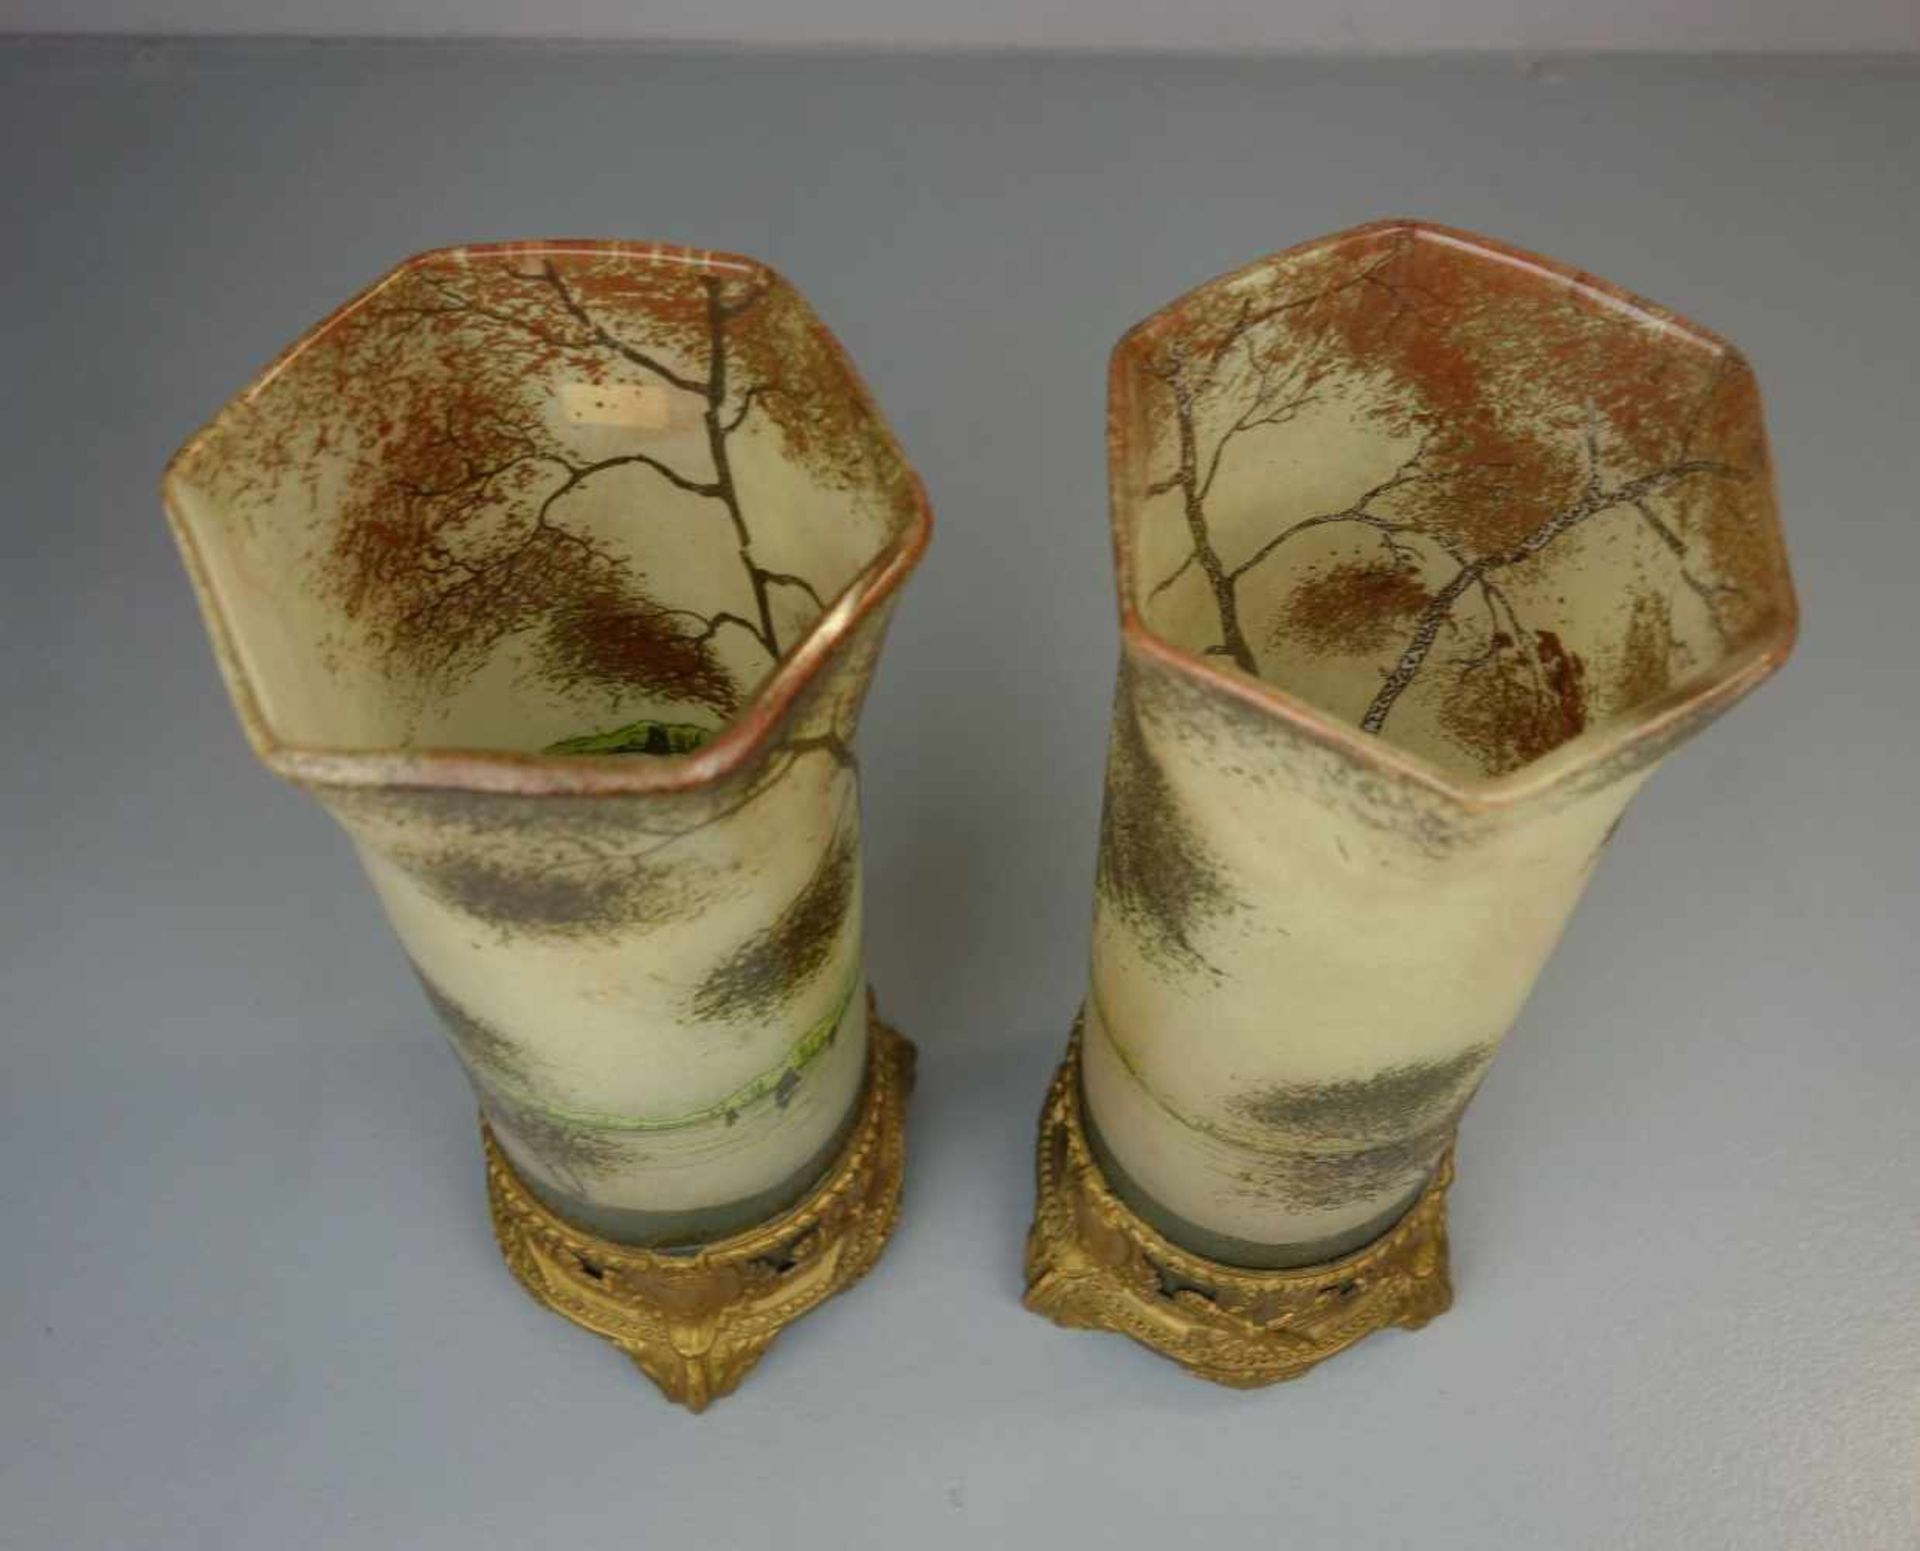 PAAR JUGENDSTILVASEN MIT LANDSCHAFTSMOTIV UND METALLMONTUREN / pair of art nouveau vases with - Image 5 of 6